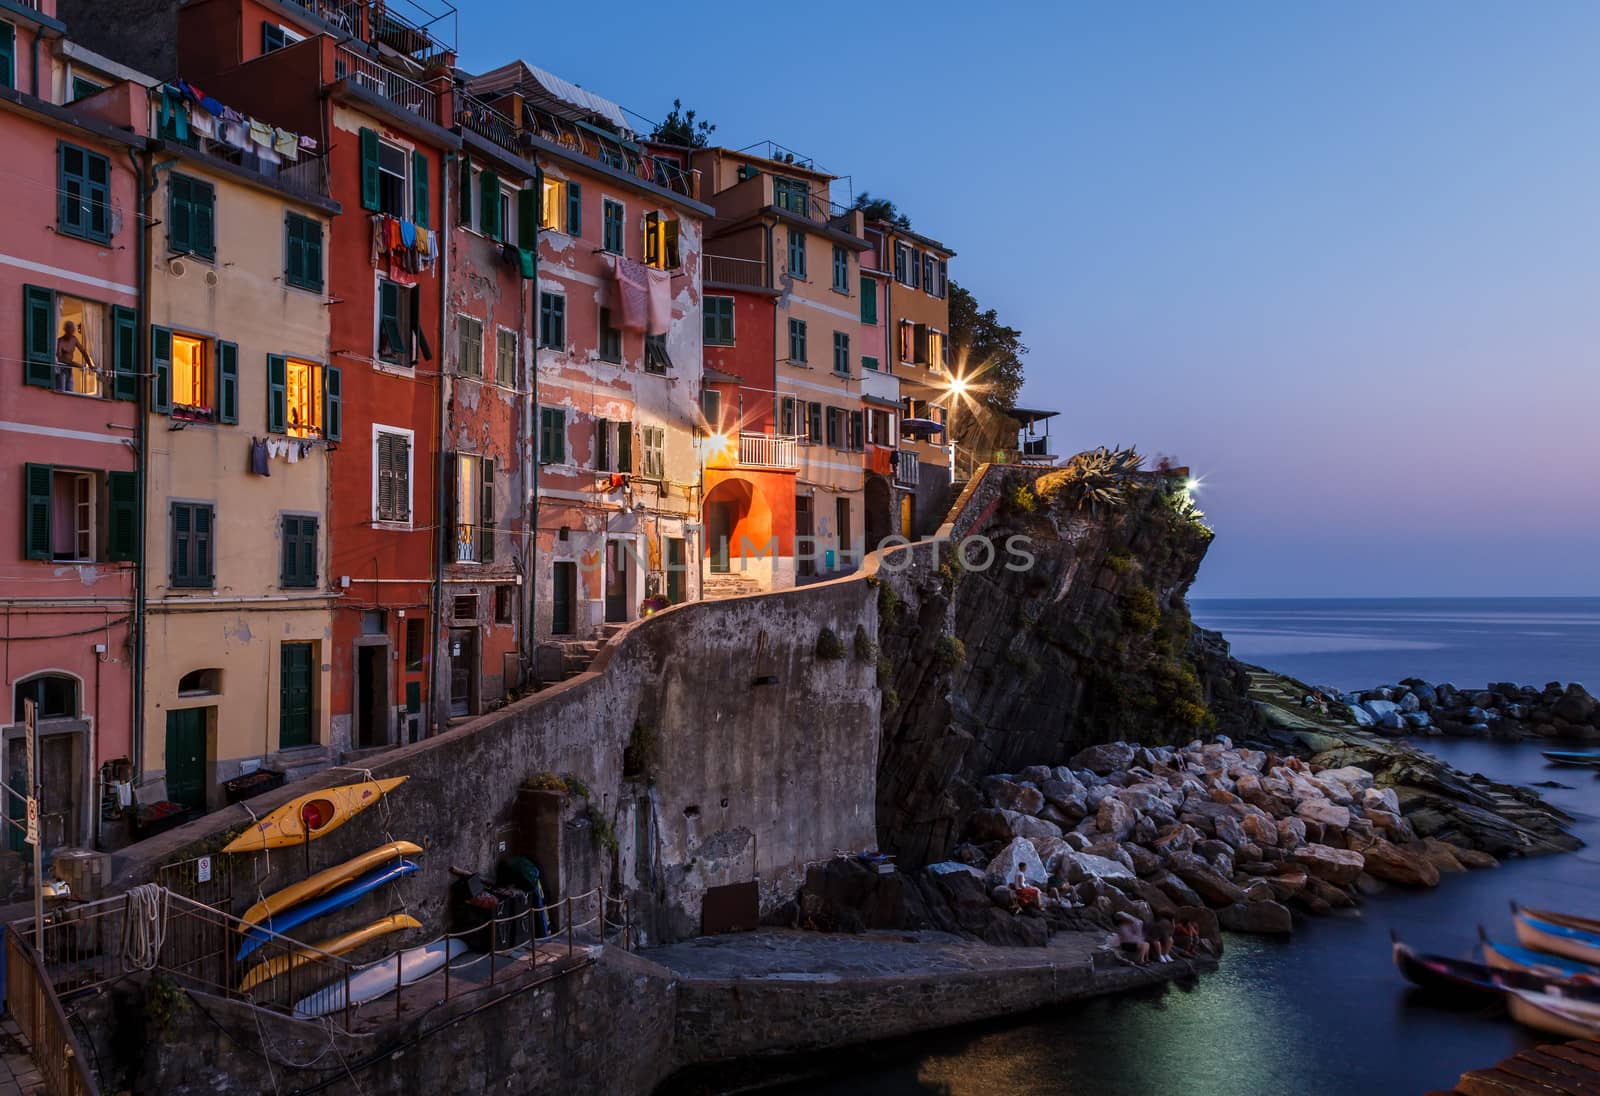 Village of Riomaggiore in Cinque Terre Illuminated at Night, Italy